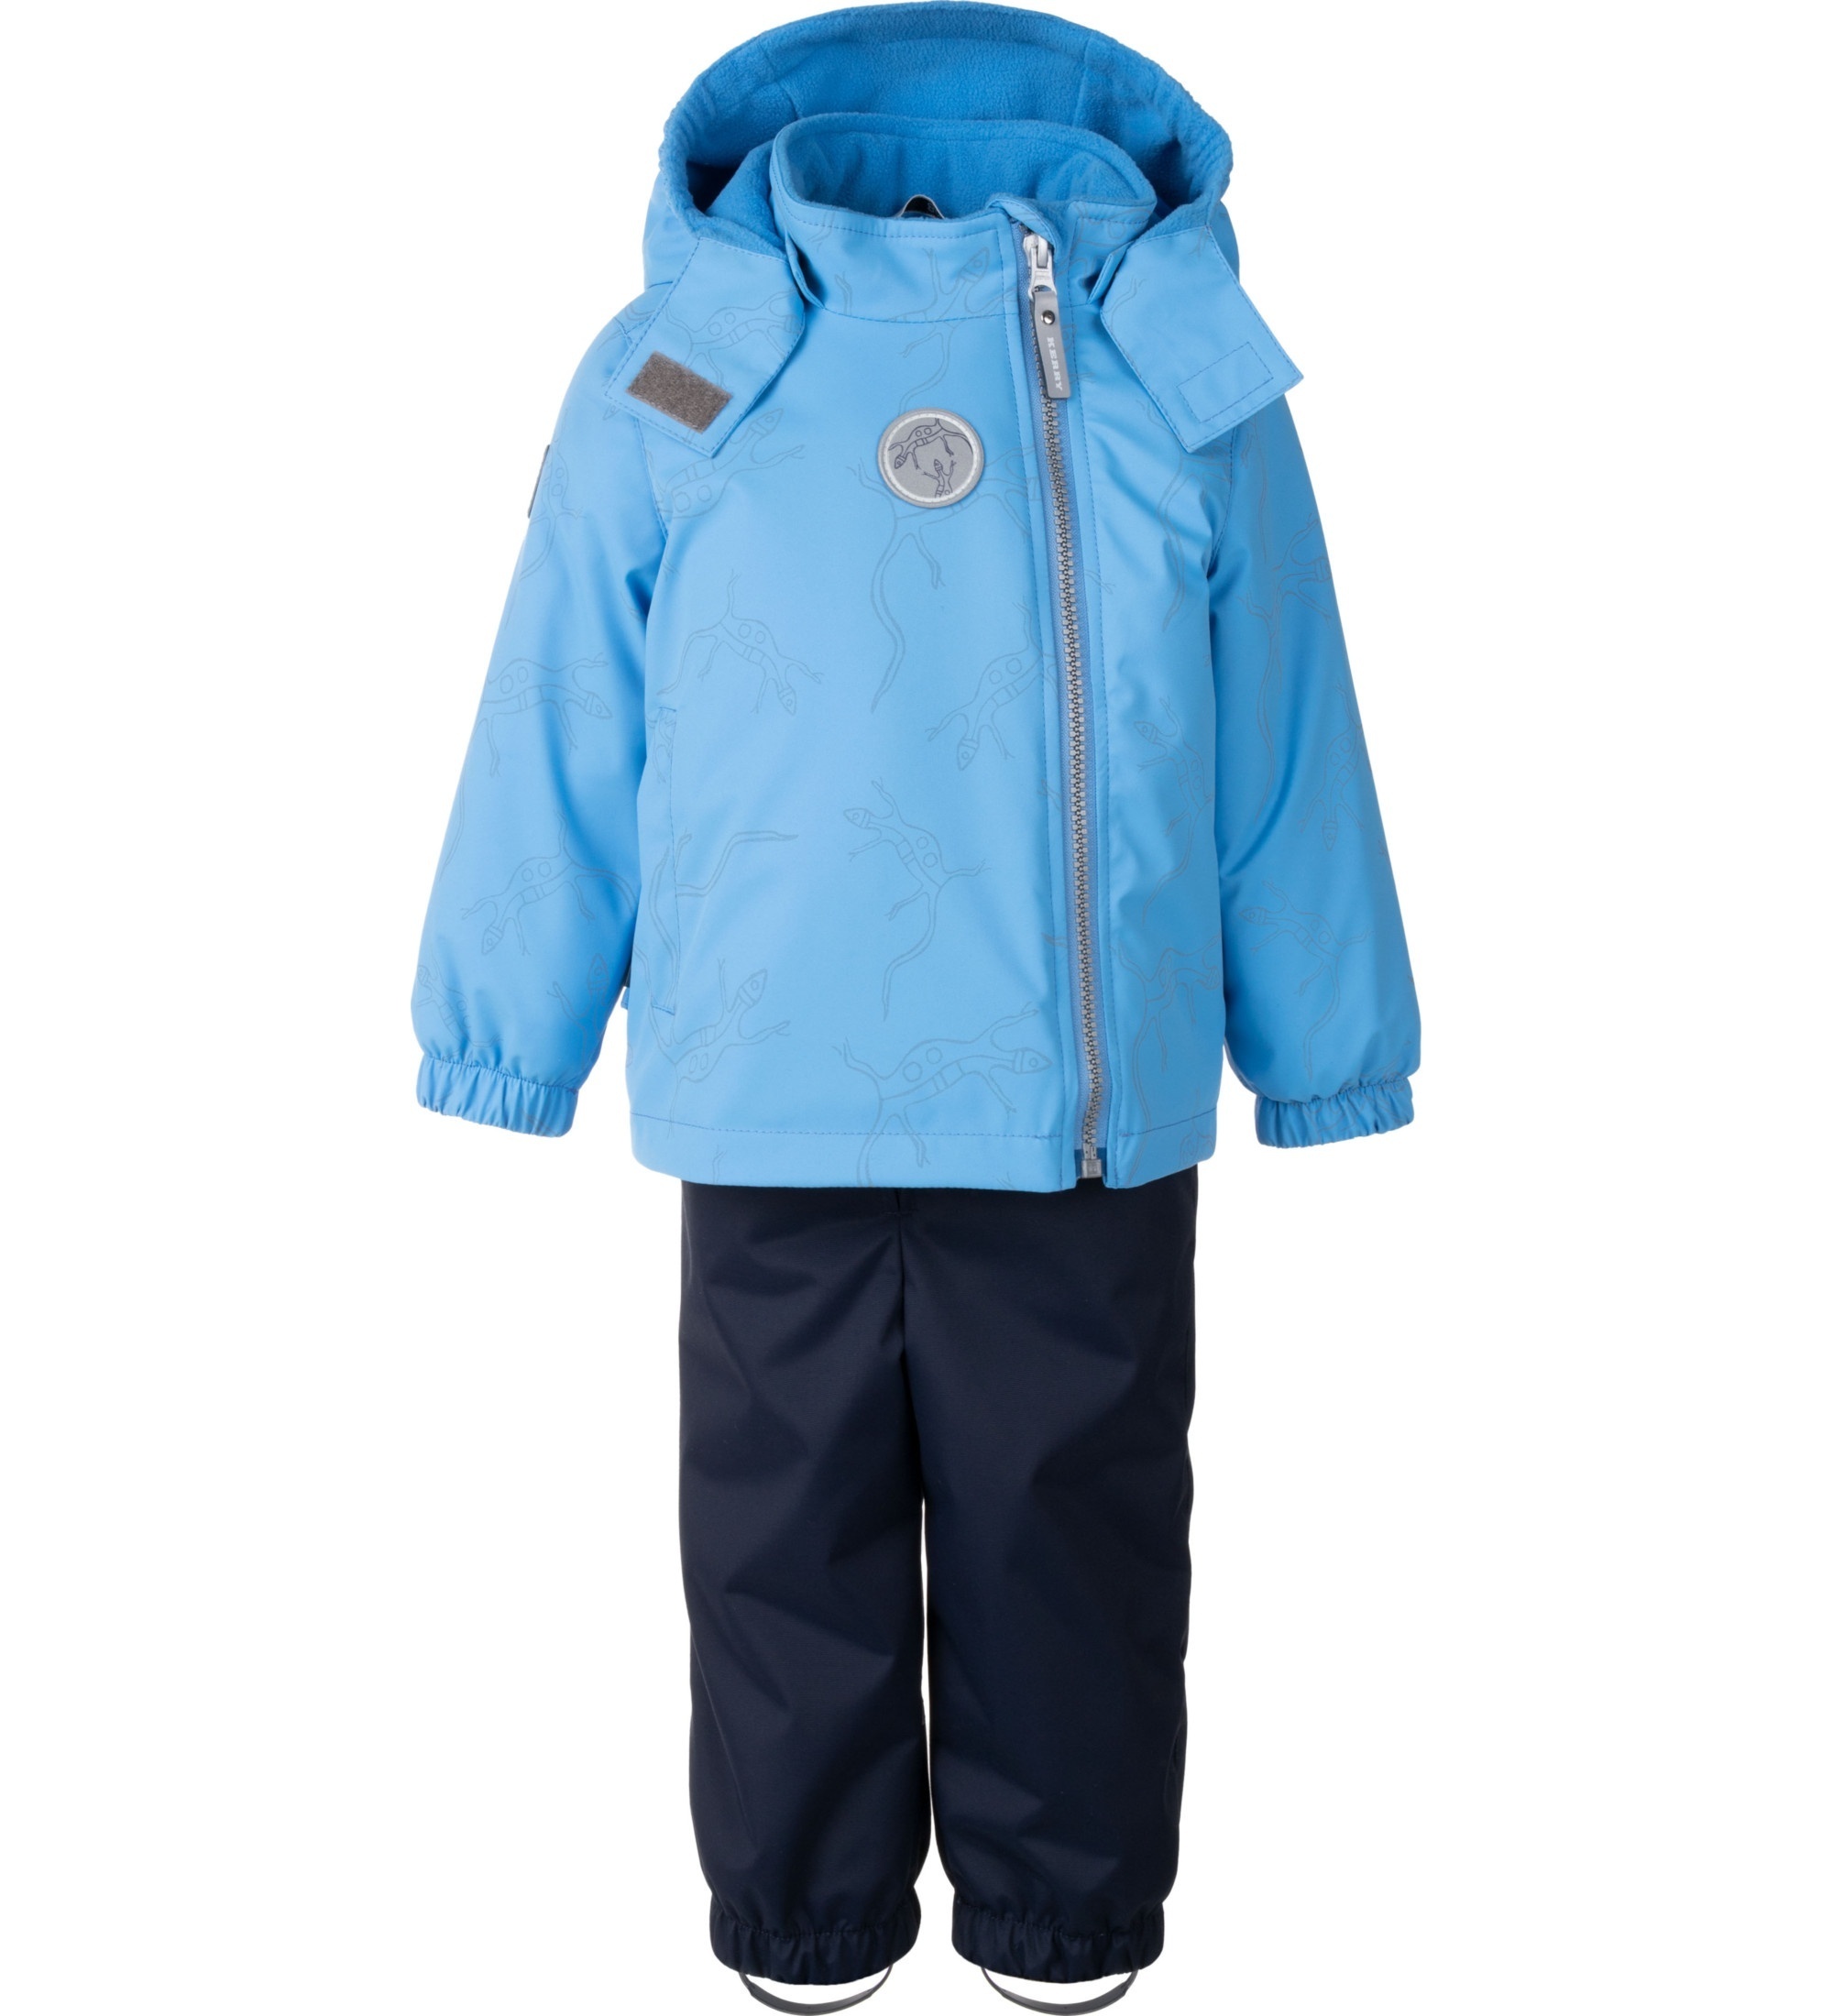 Комплект верхней одежды детский KERRY KEN, голубой,синий, 92